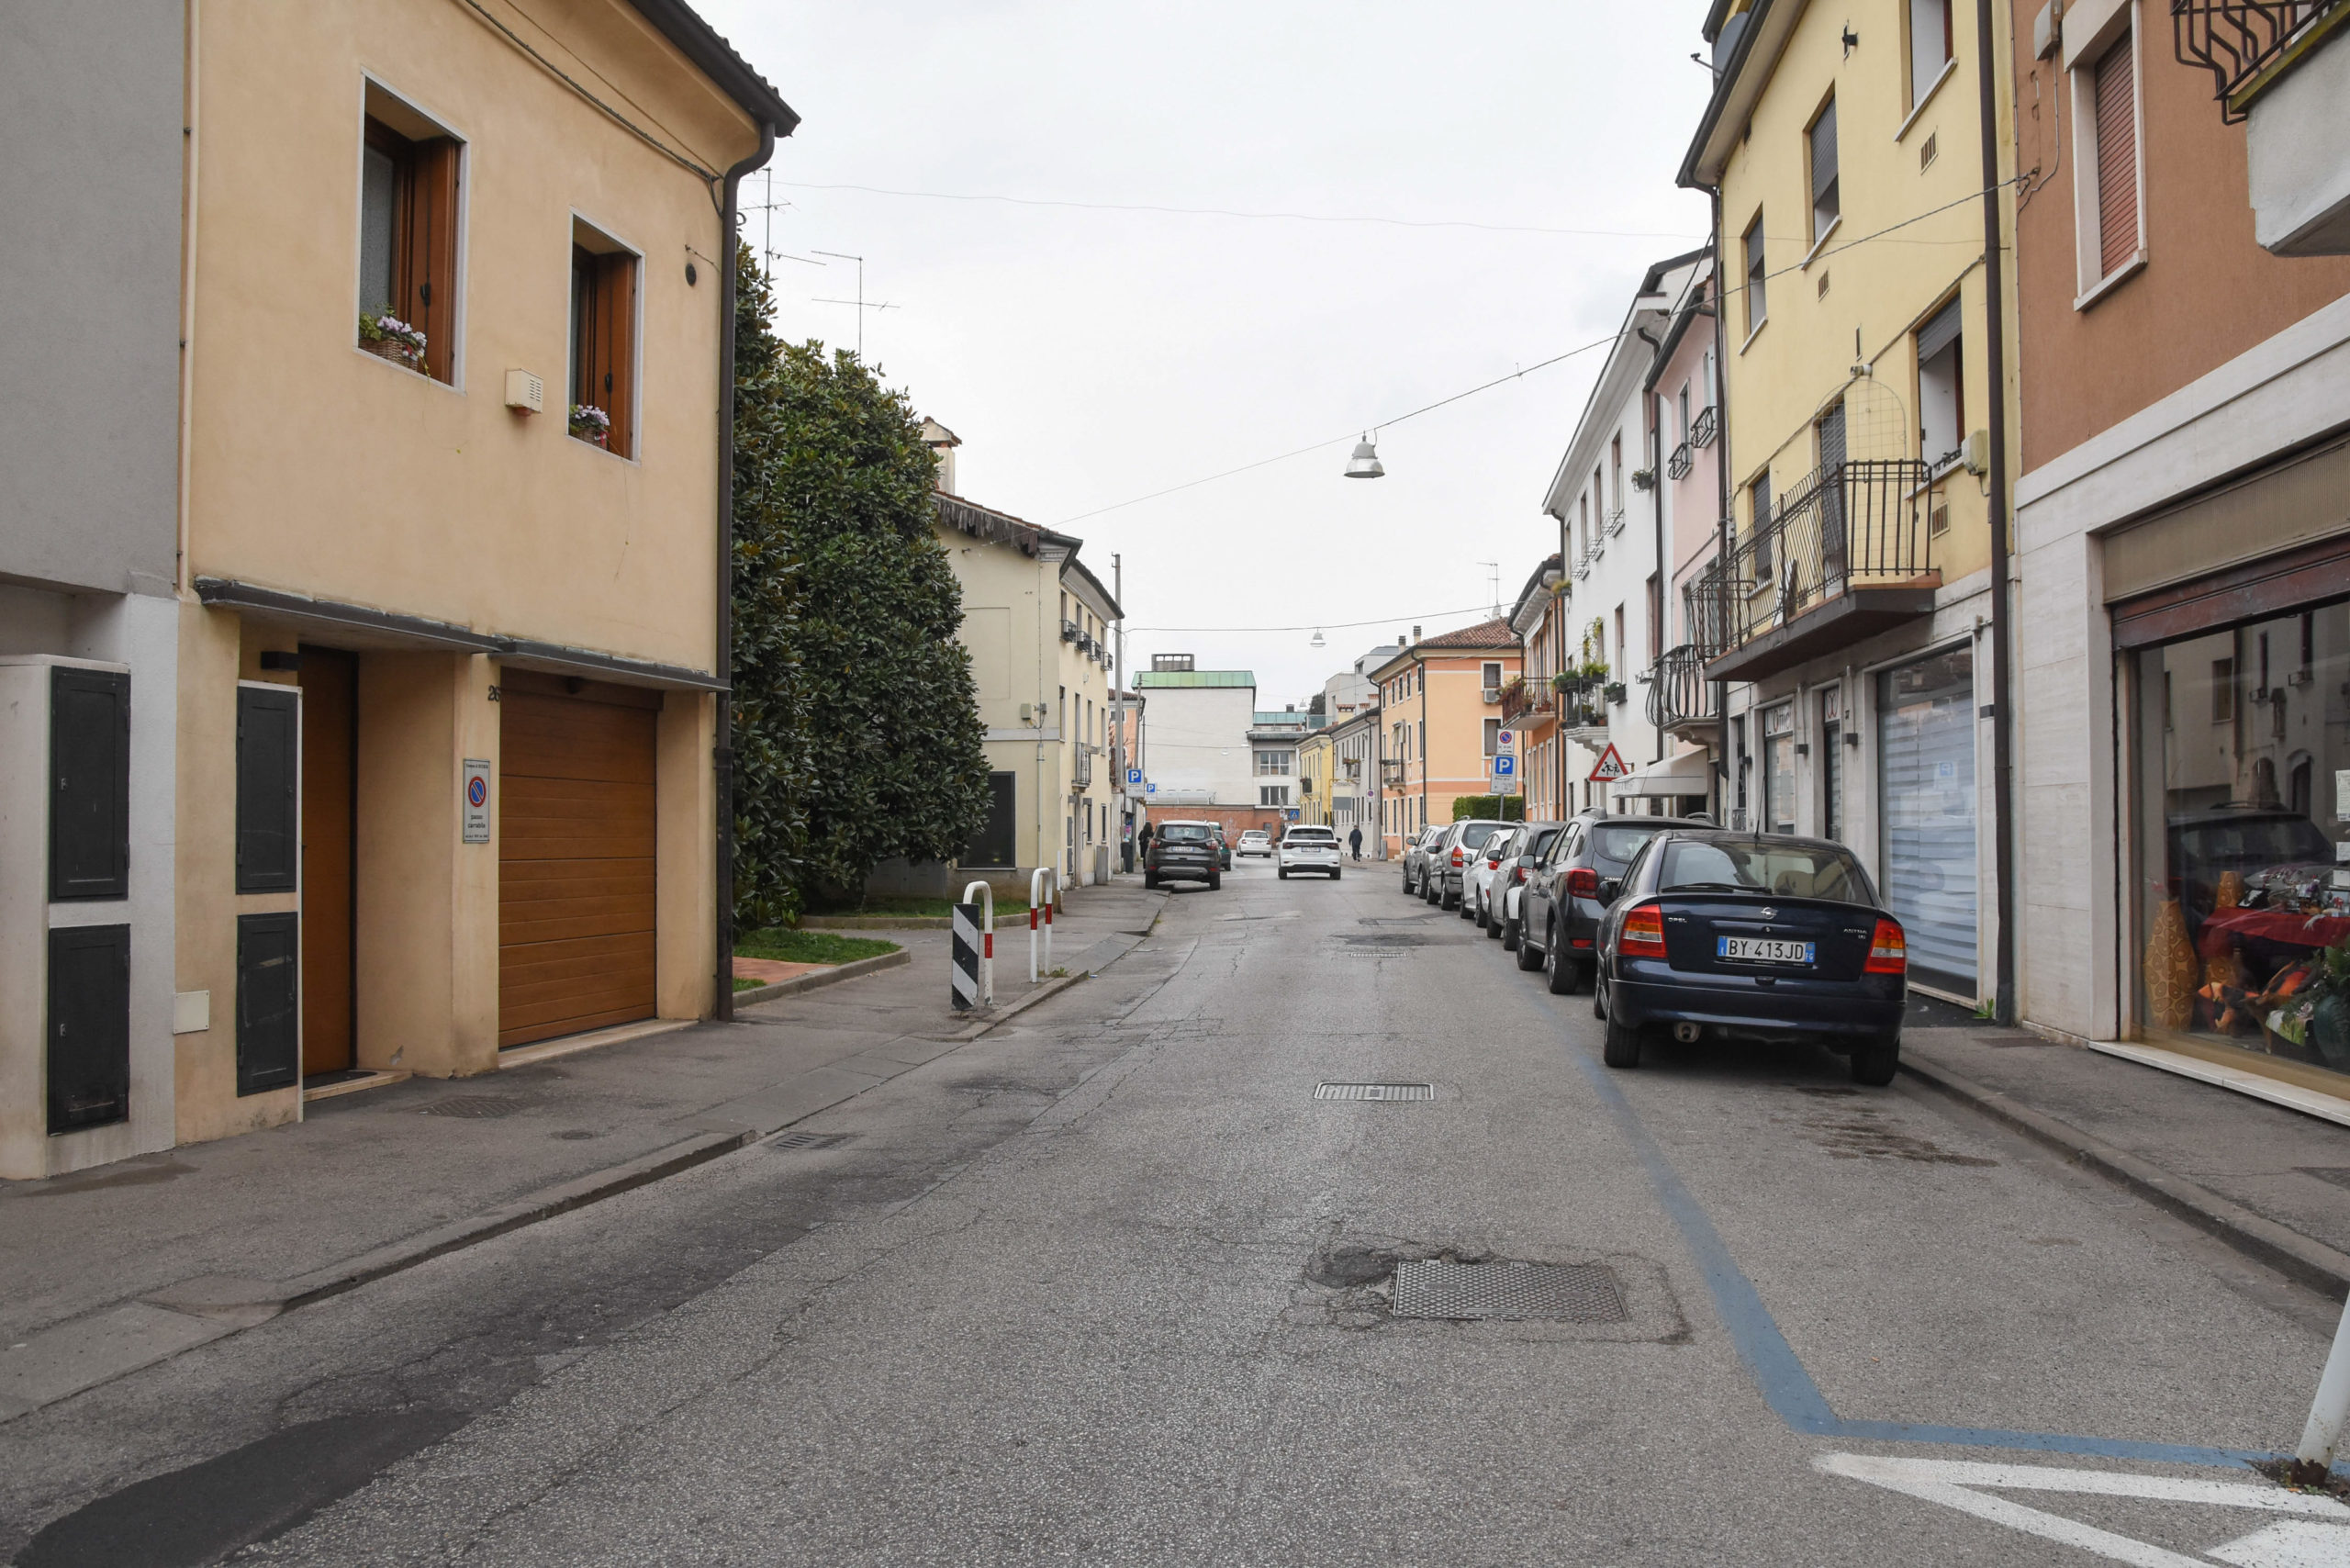 Via Raffaele Pasi (Vicenza-Toniolo Ilaria-Colorfoto per ViPiù)